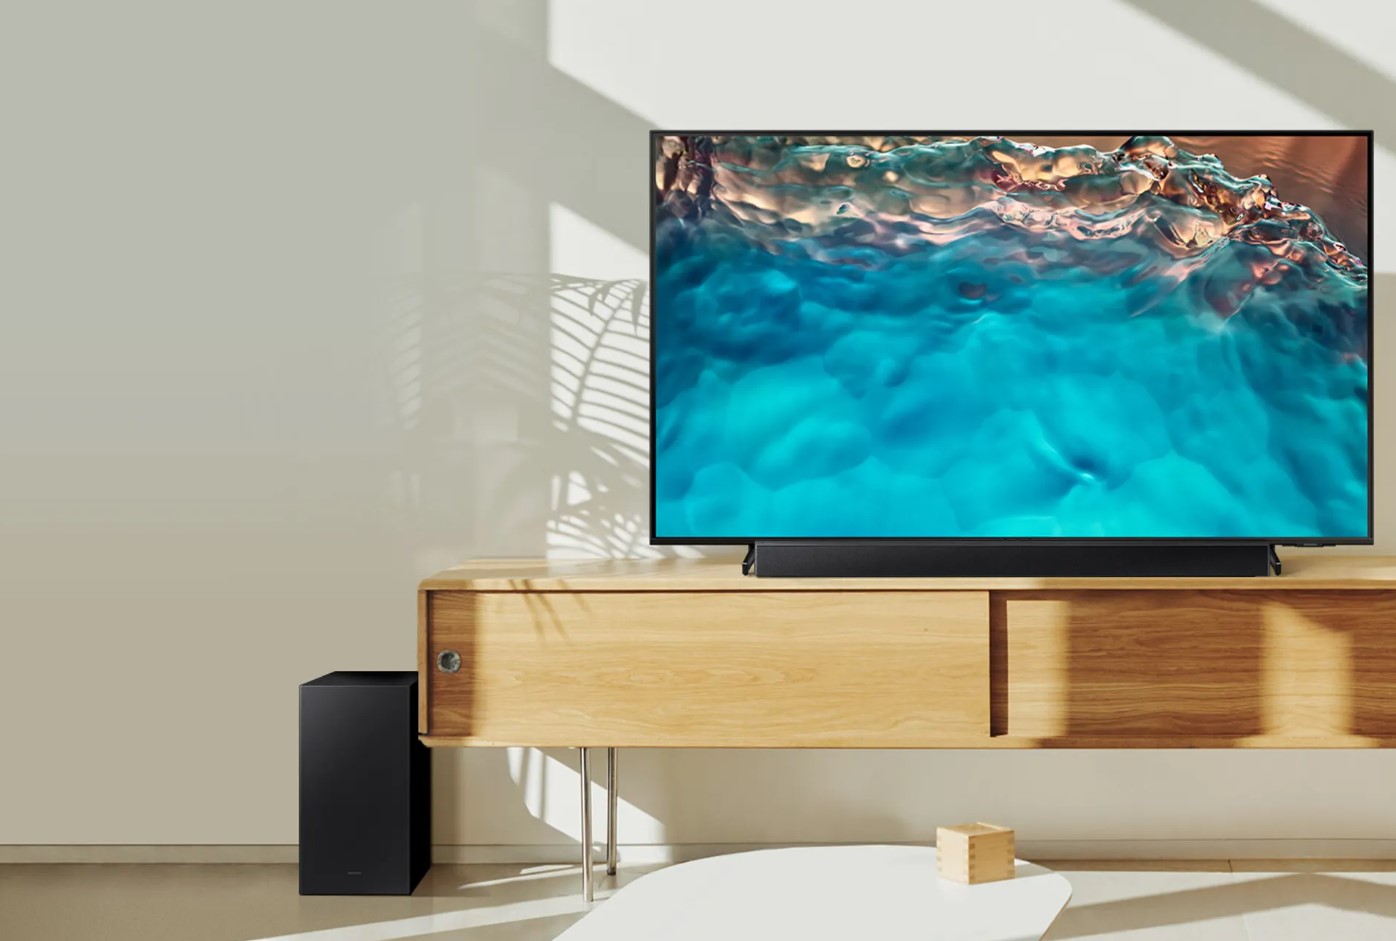 Samsung et une barre de son sous un téléviseur